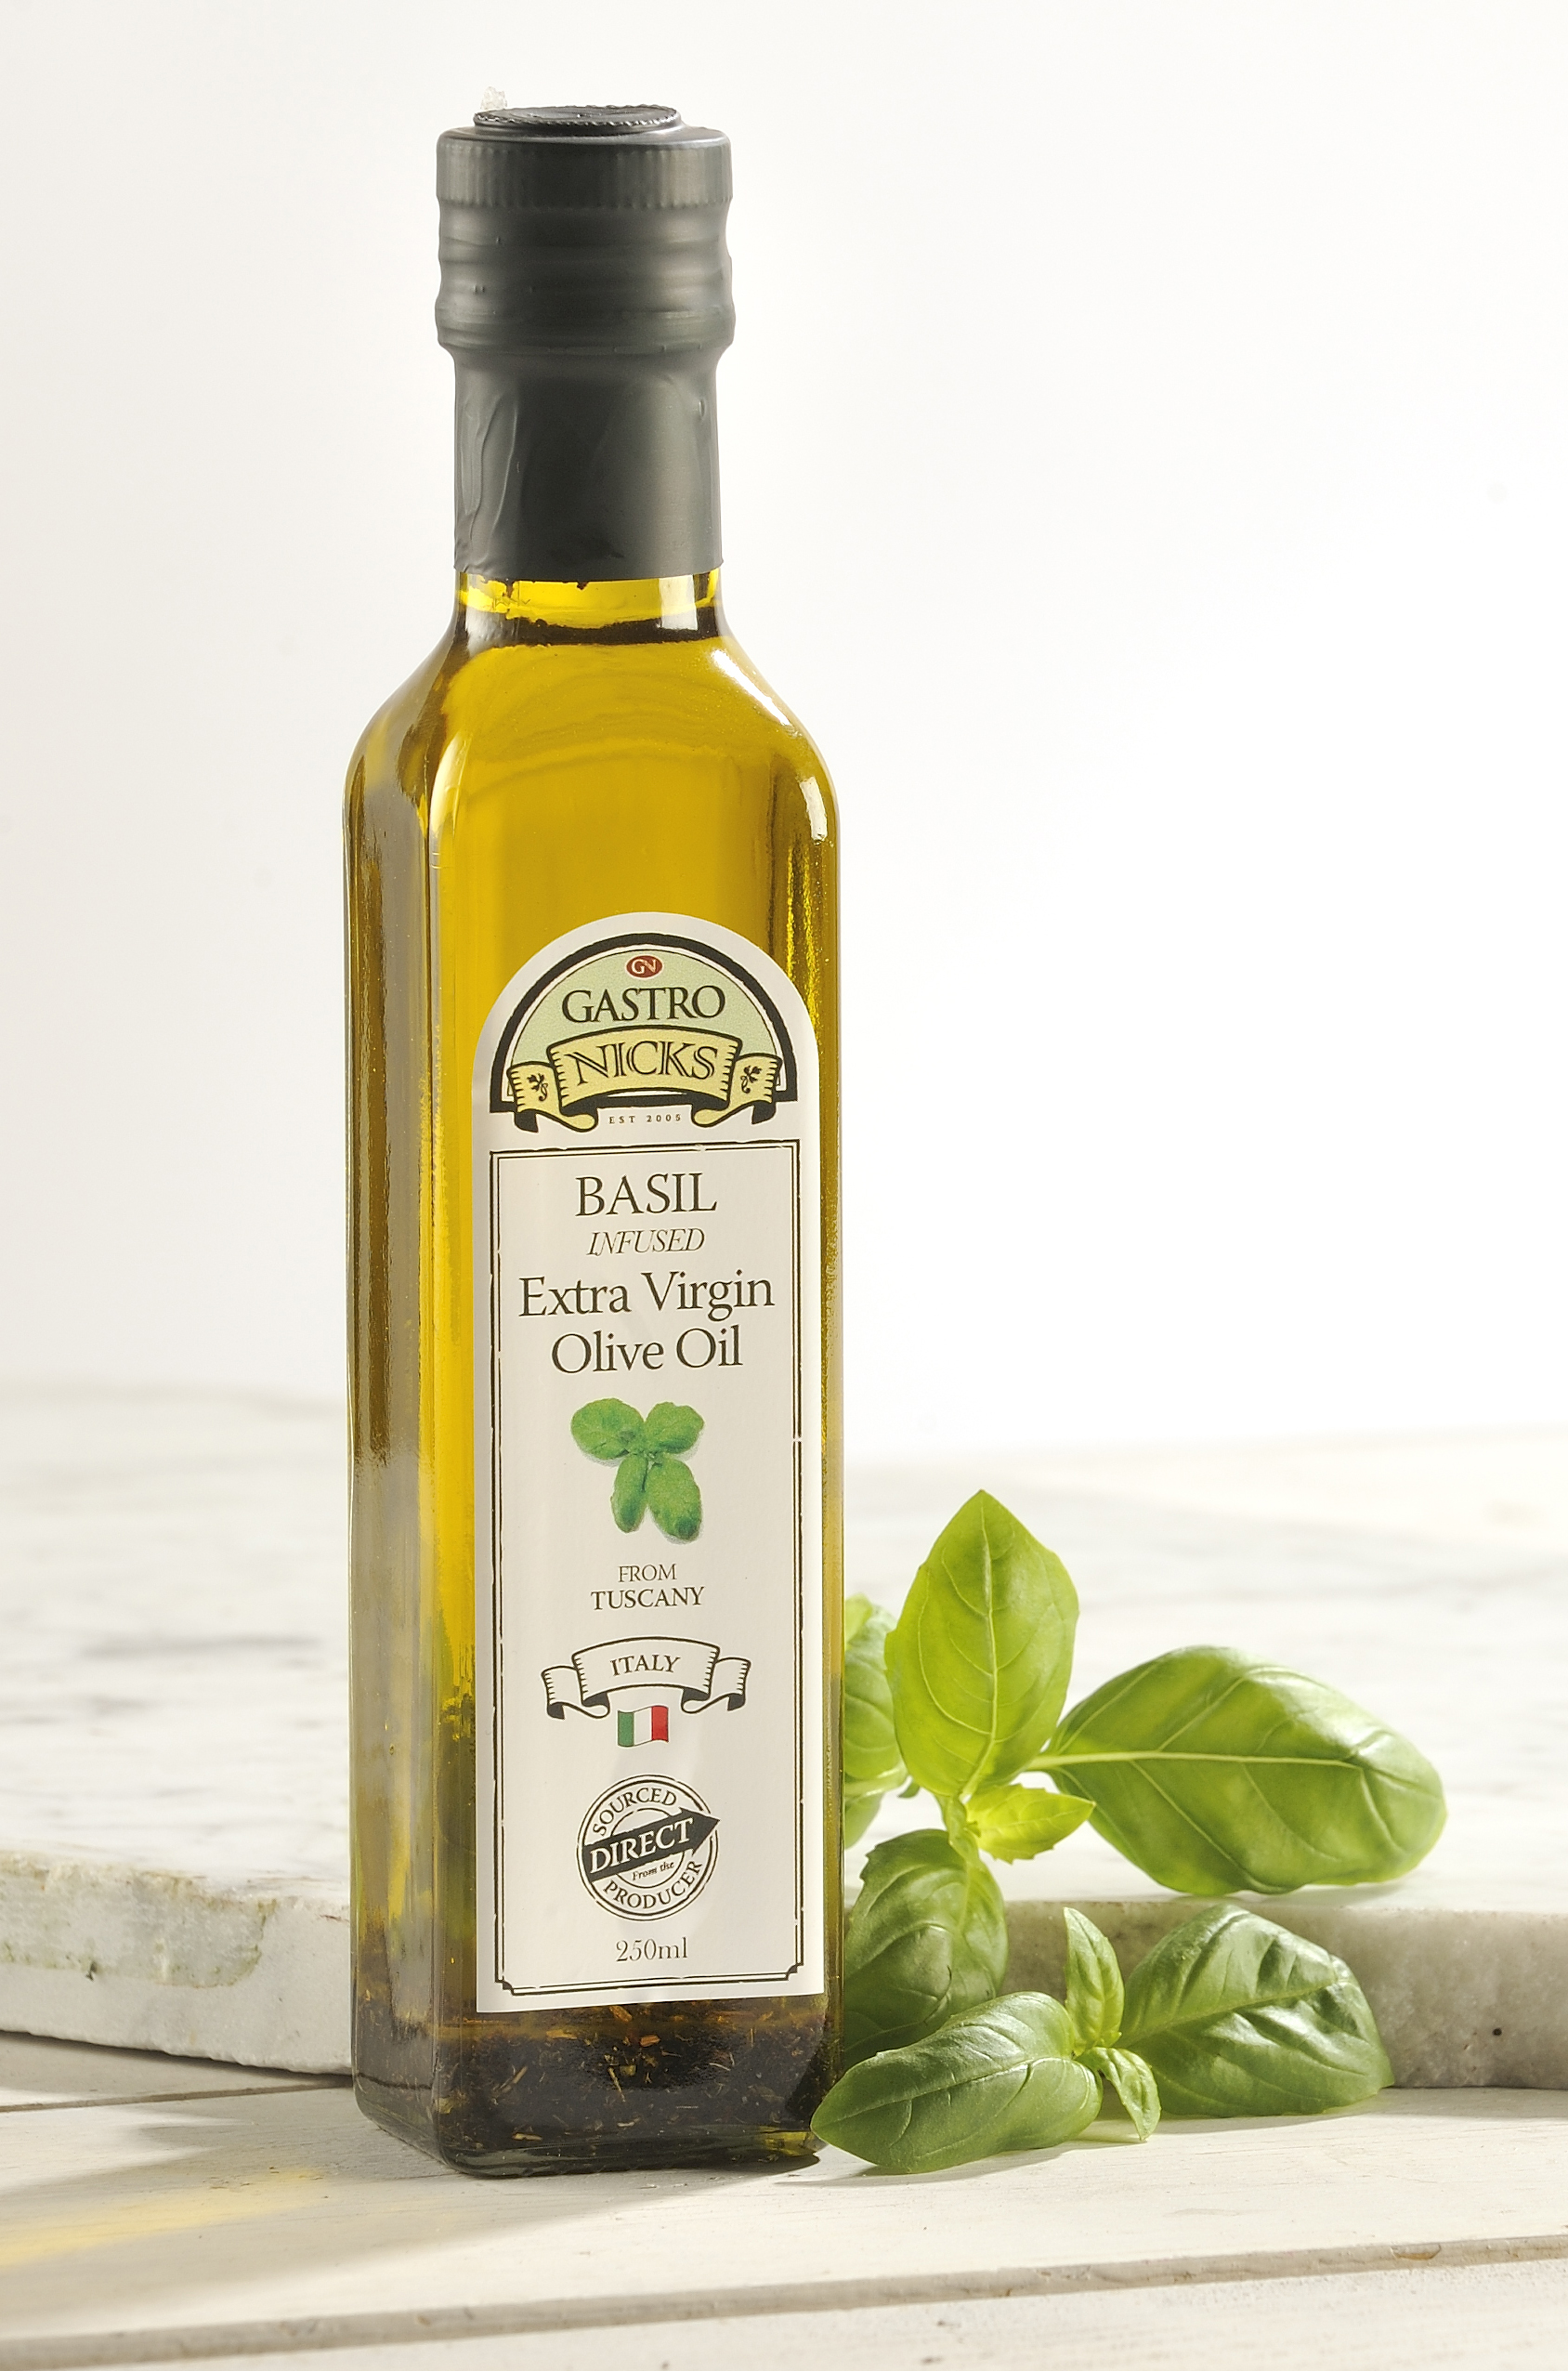 Морковь оливковое масло. Оливер оил масло оливковое. Olive Oil масло оливковое. Олив Ойл масло оливковое. Оливковое масло Чиро Италия.